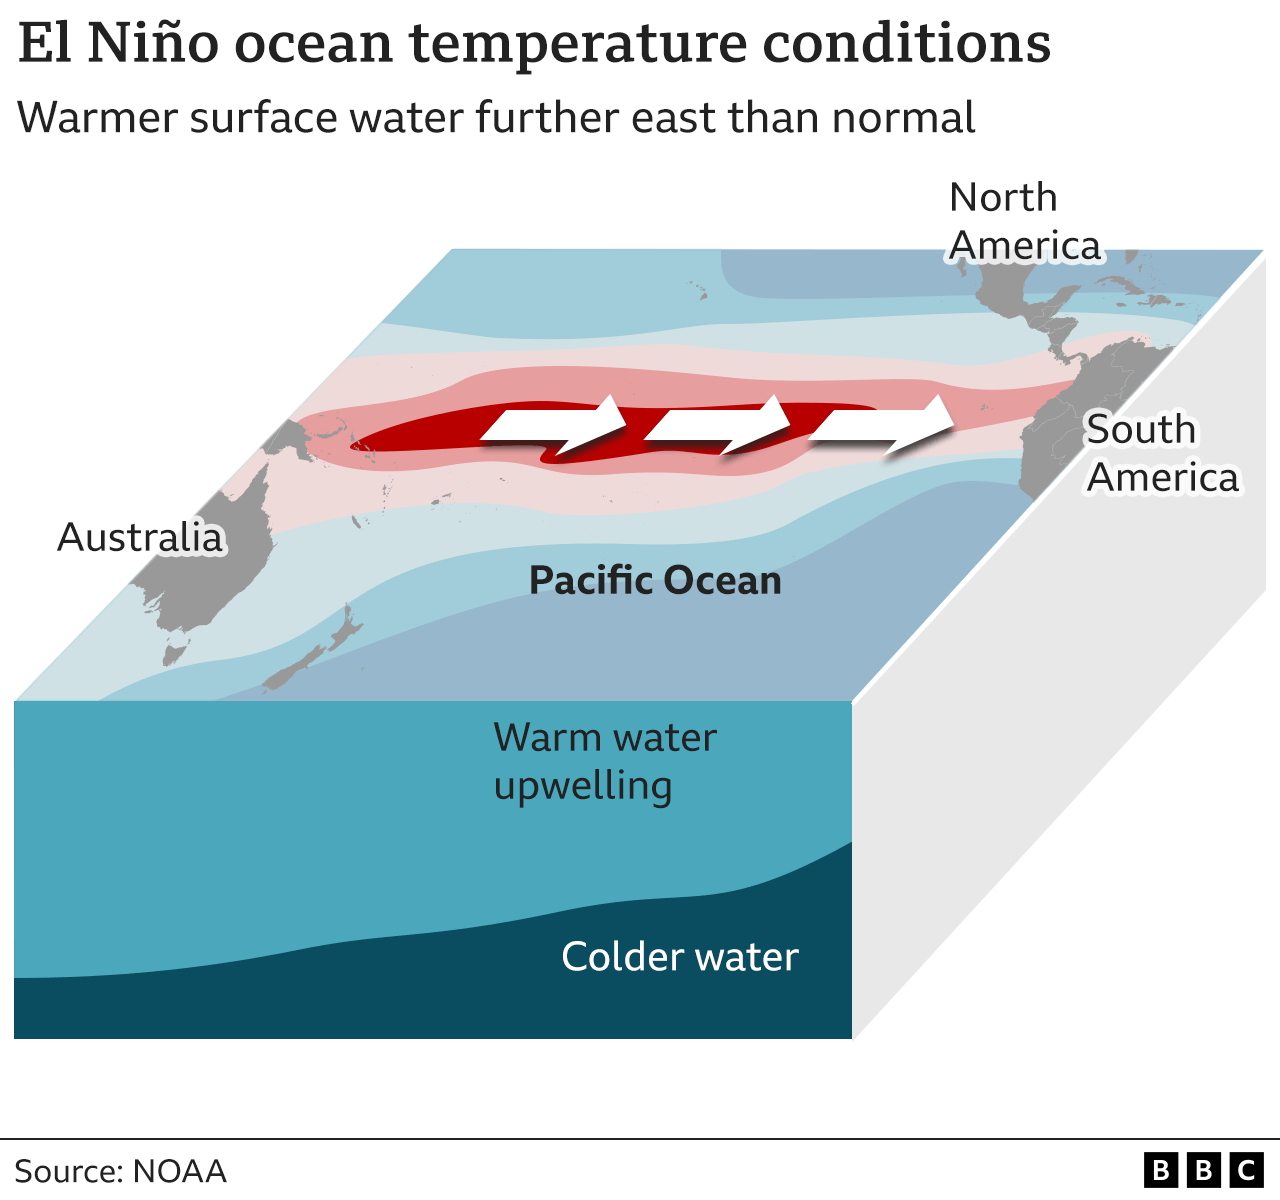 Инфографика, показывающая, как в условиях Эль-Ниньо более теплые поверхностные воды океана имеют тенденцию быть дальше на восток, чем обычно, в районе Тихого океана, простирающемся от Австралии и Папуа-Новой Гвинеи до западного побережья Южной и Центральной Америки.